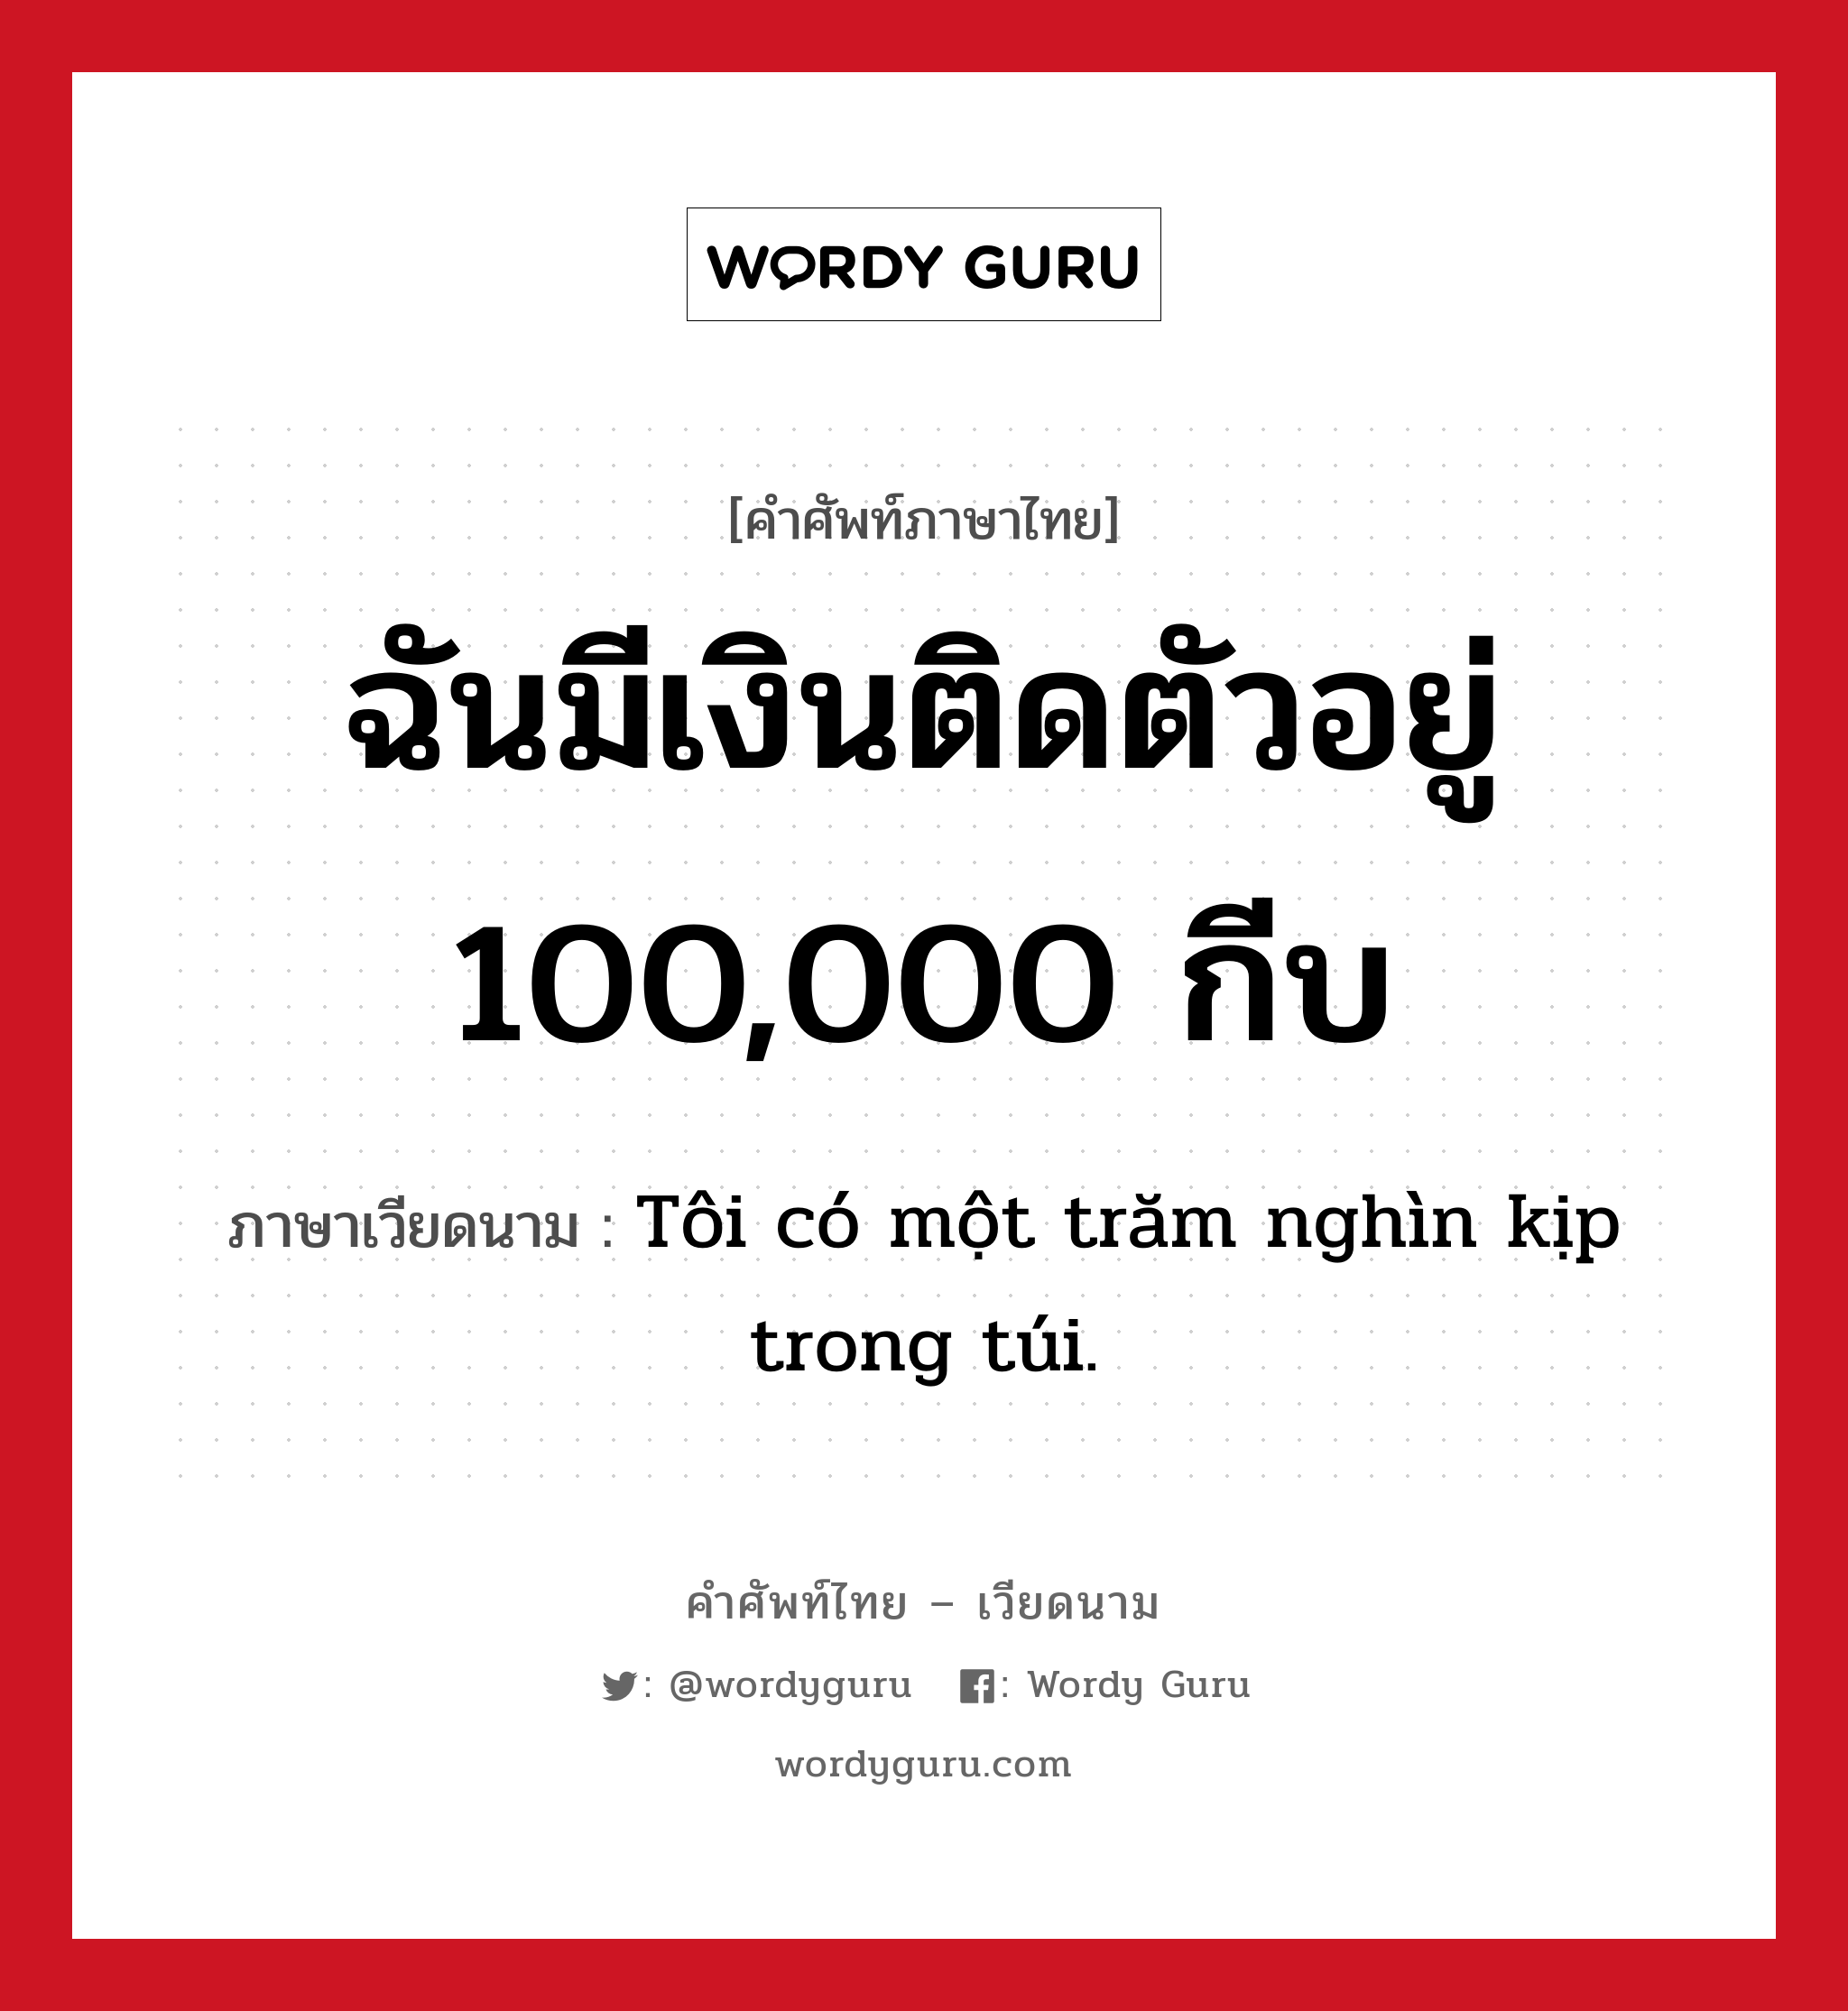 Tôi có một trăm nghìn kịp trong túi. ภาษาไทย?, คำศัพท์ภาษาไทย - เวียดนาม Tôi có một trăm nghìn kịp trong túi. ภาษาเวียดนาม ฉันมีเงินติดตัวอยู่ 100,000 กีบ หมวด การนับเลขและเวลา หมวด การนับเลขและเวลา